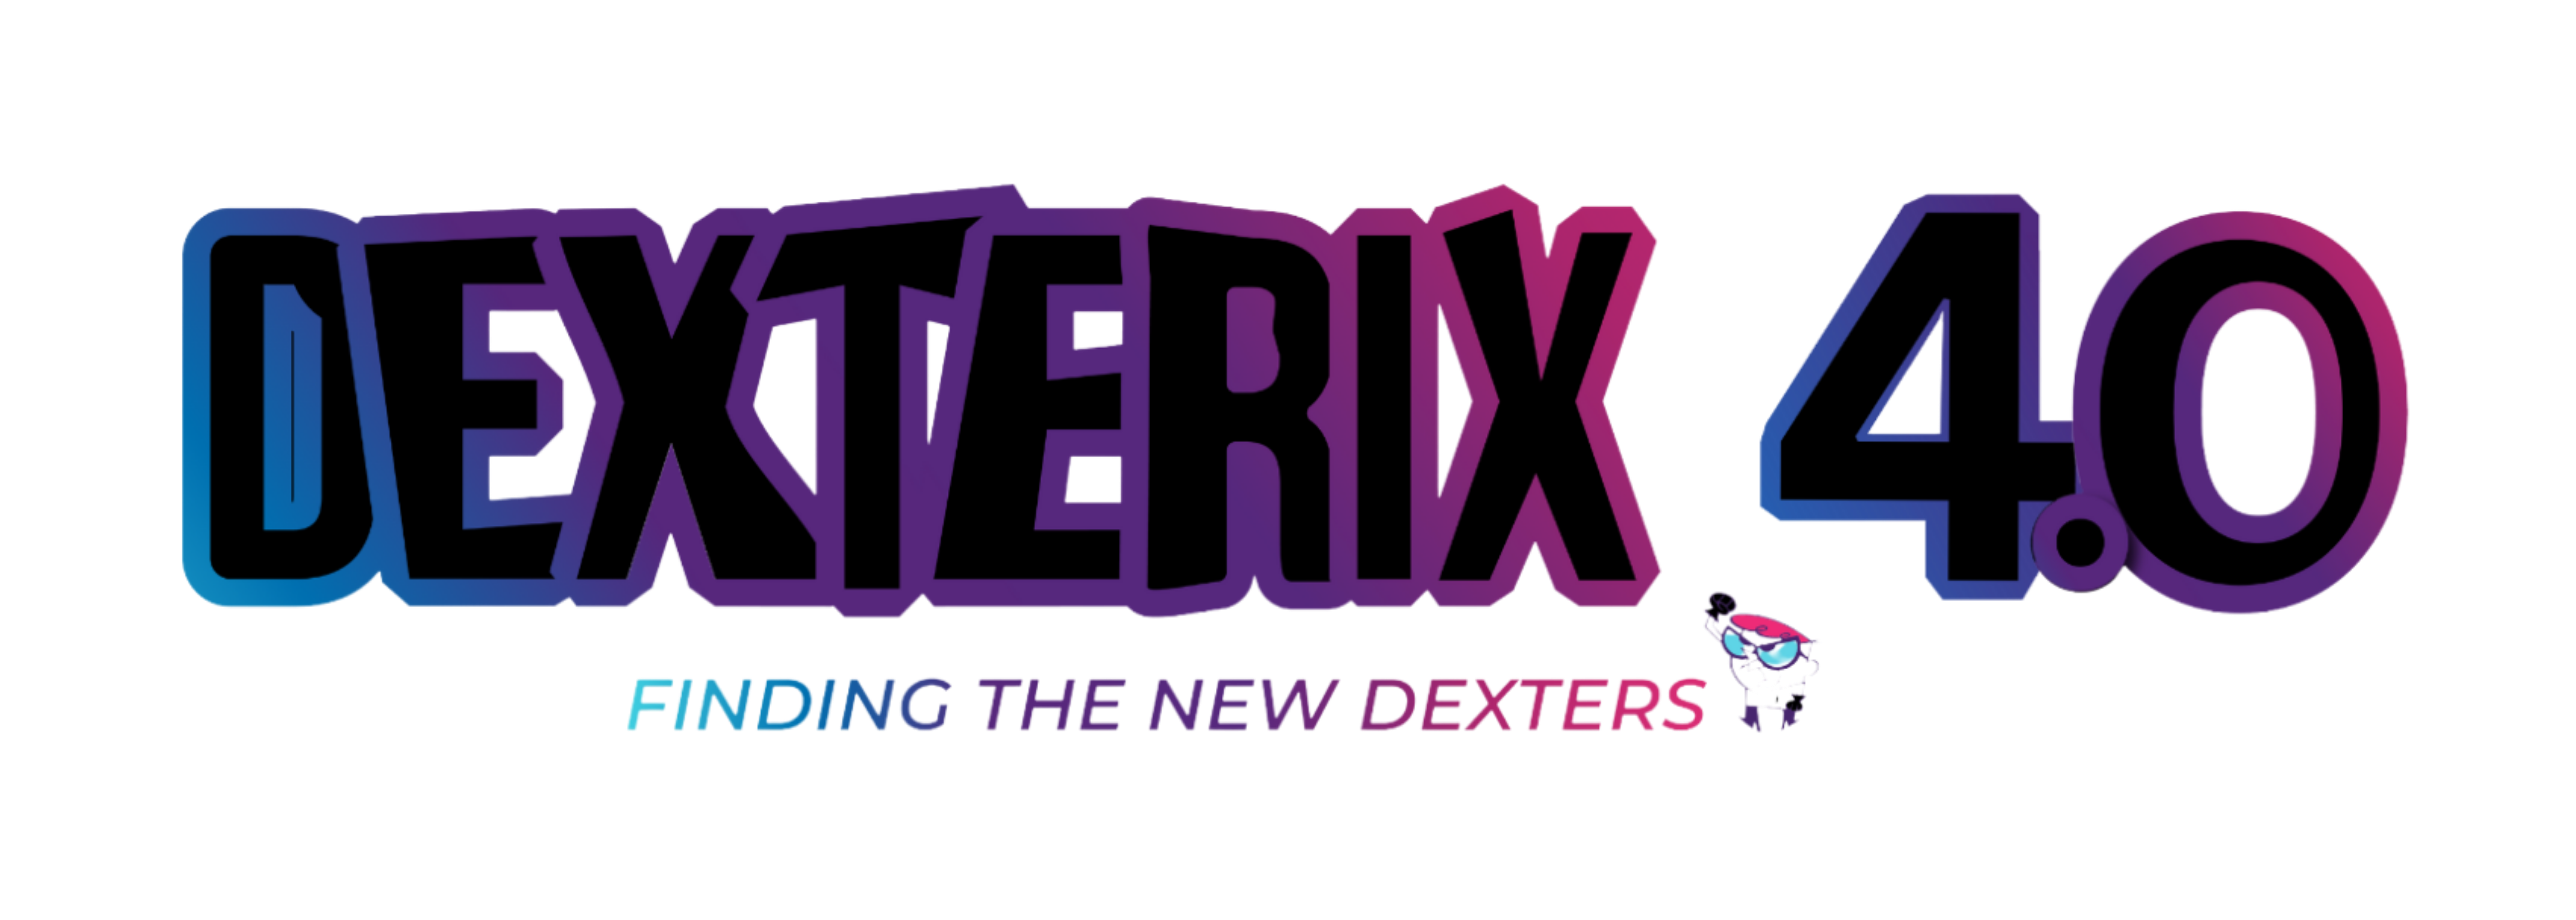 Dexterix 2.0